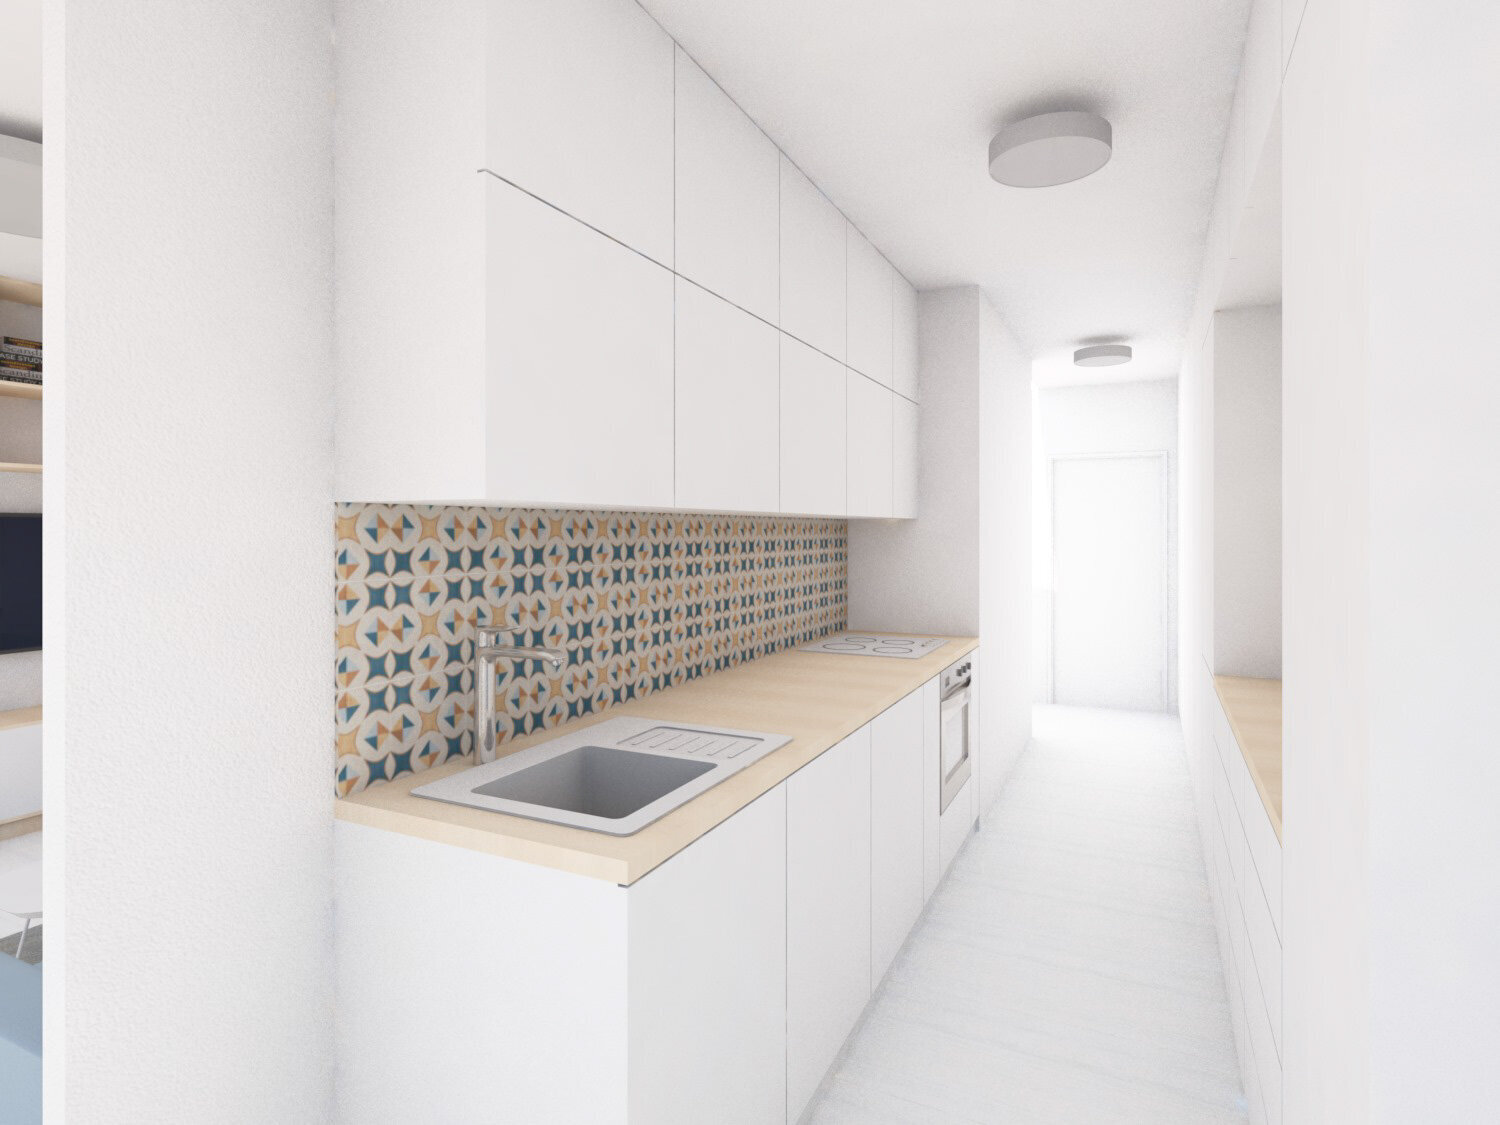 návrh interiéru panelový byt pohled do kuchyně